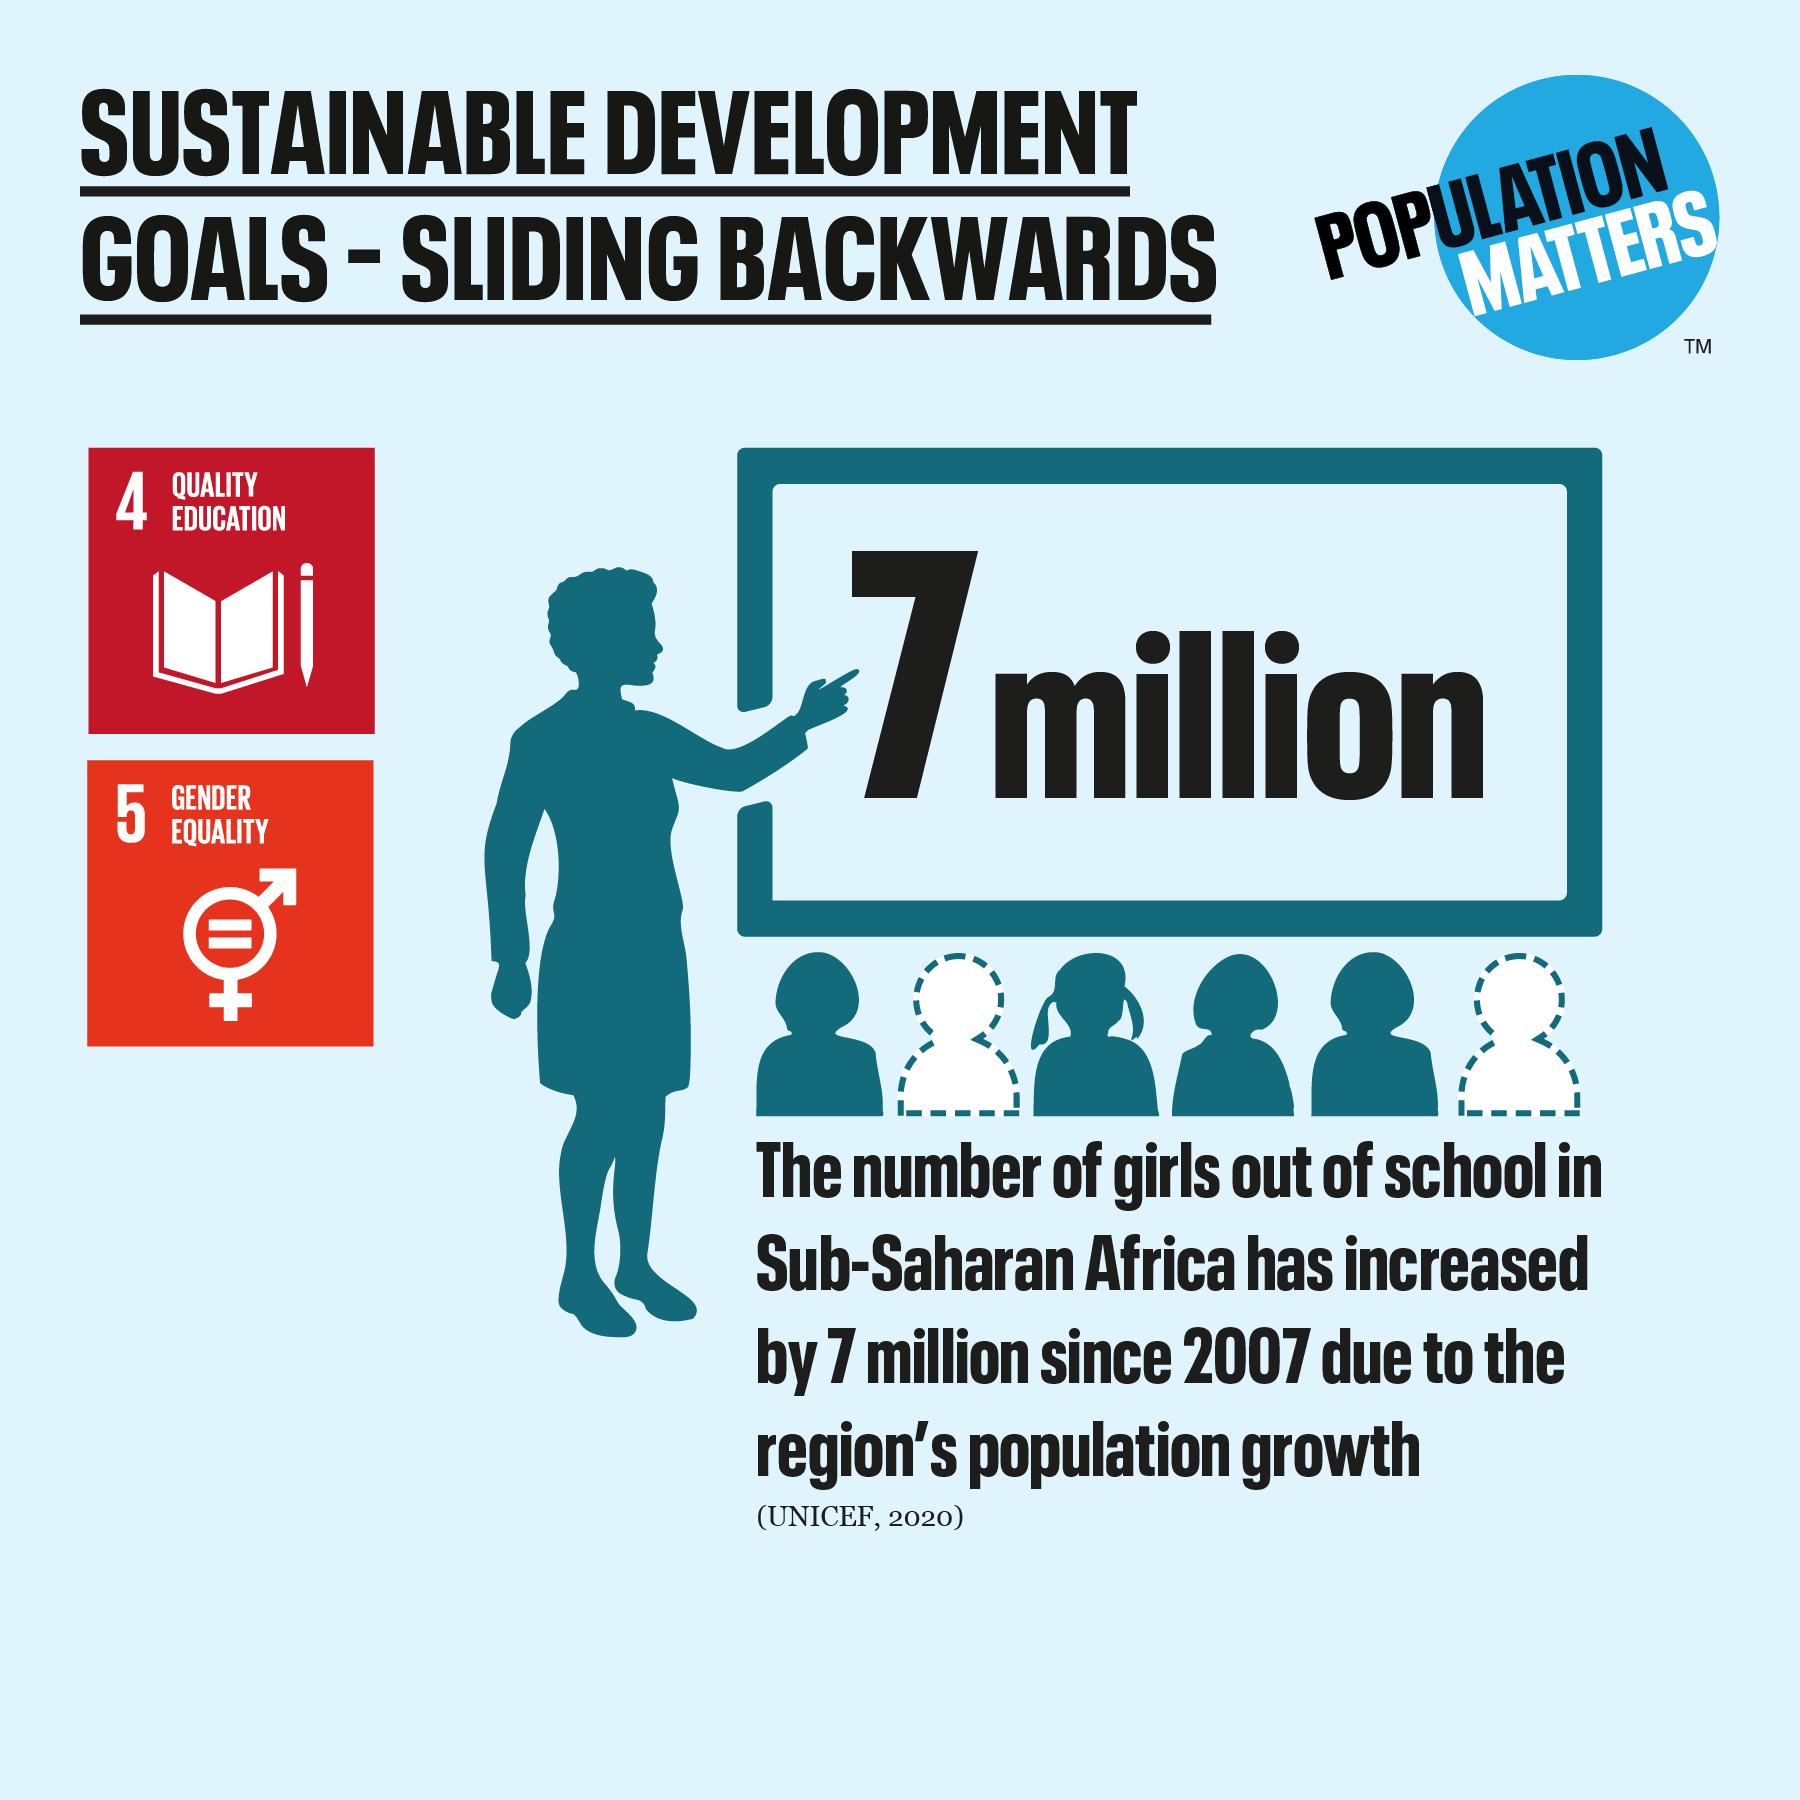 SDGs sliding backwards - girls education